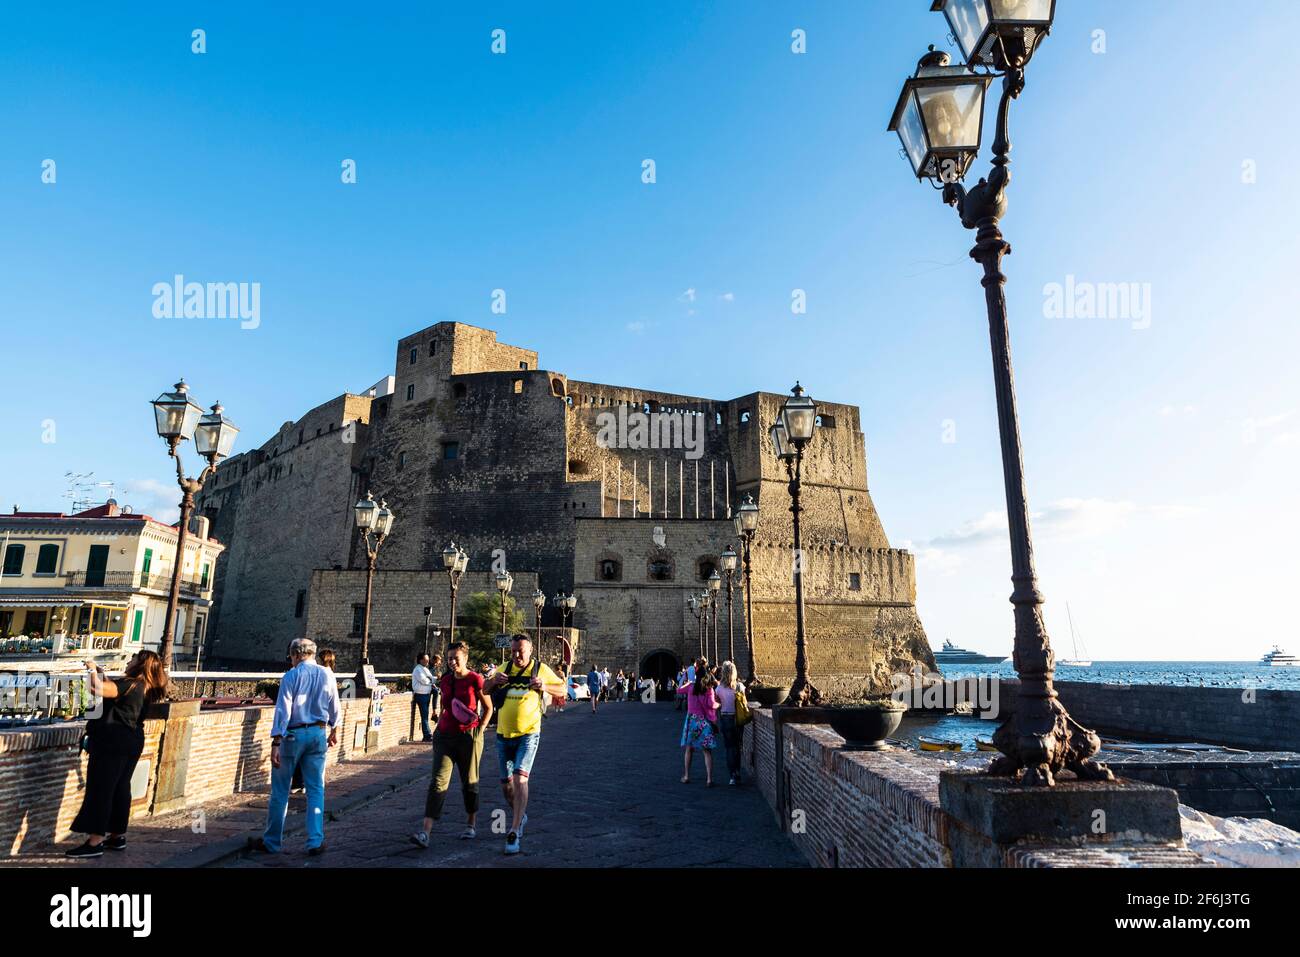 Neapel, Italien - 9. September 2019: Fassade des Castel dell'Ovo (Egg Castle) mit Menschen rund um den Golf von Neapel, Italien Stockfoto